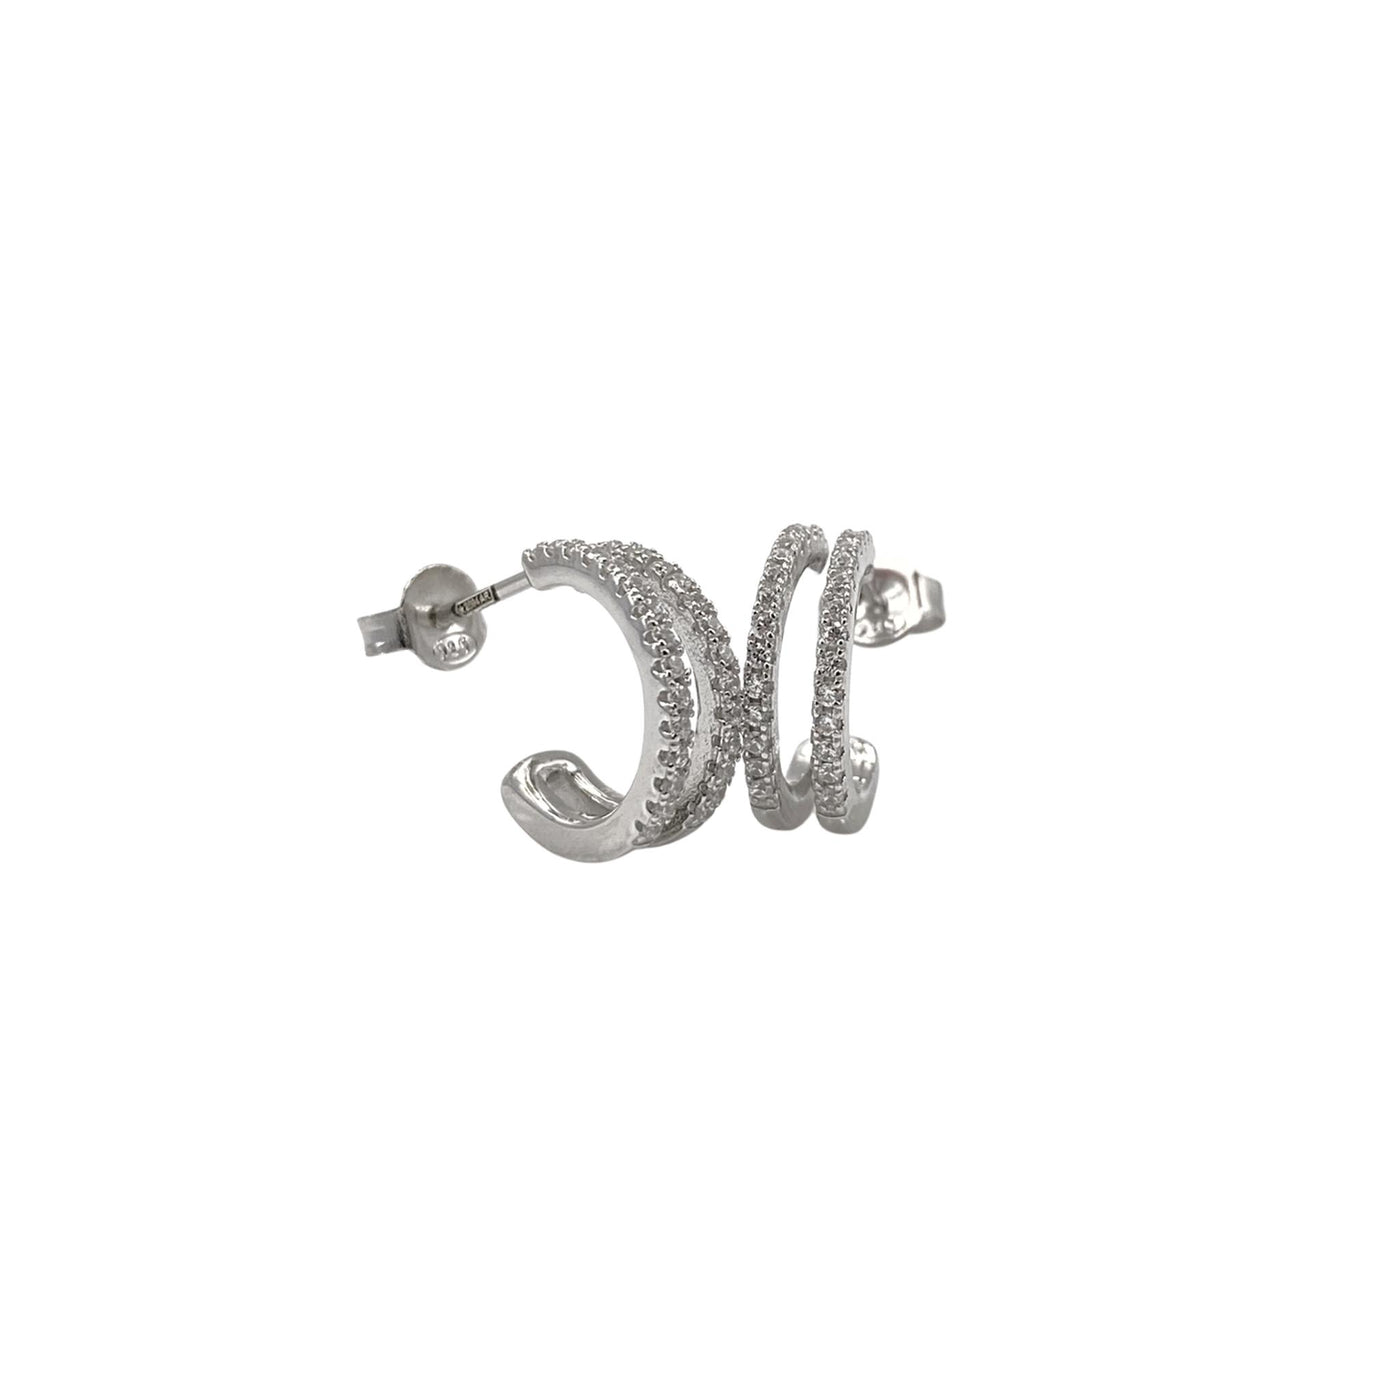 Silver hoop earrings with 2 lines - 14 mm